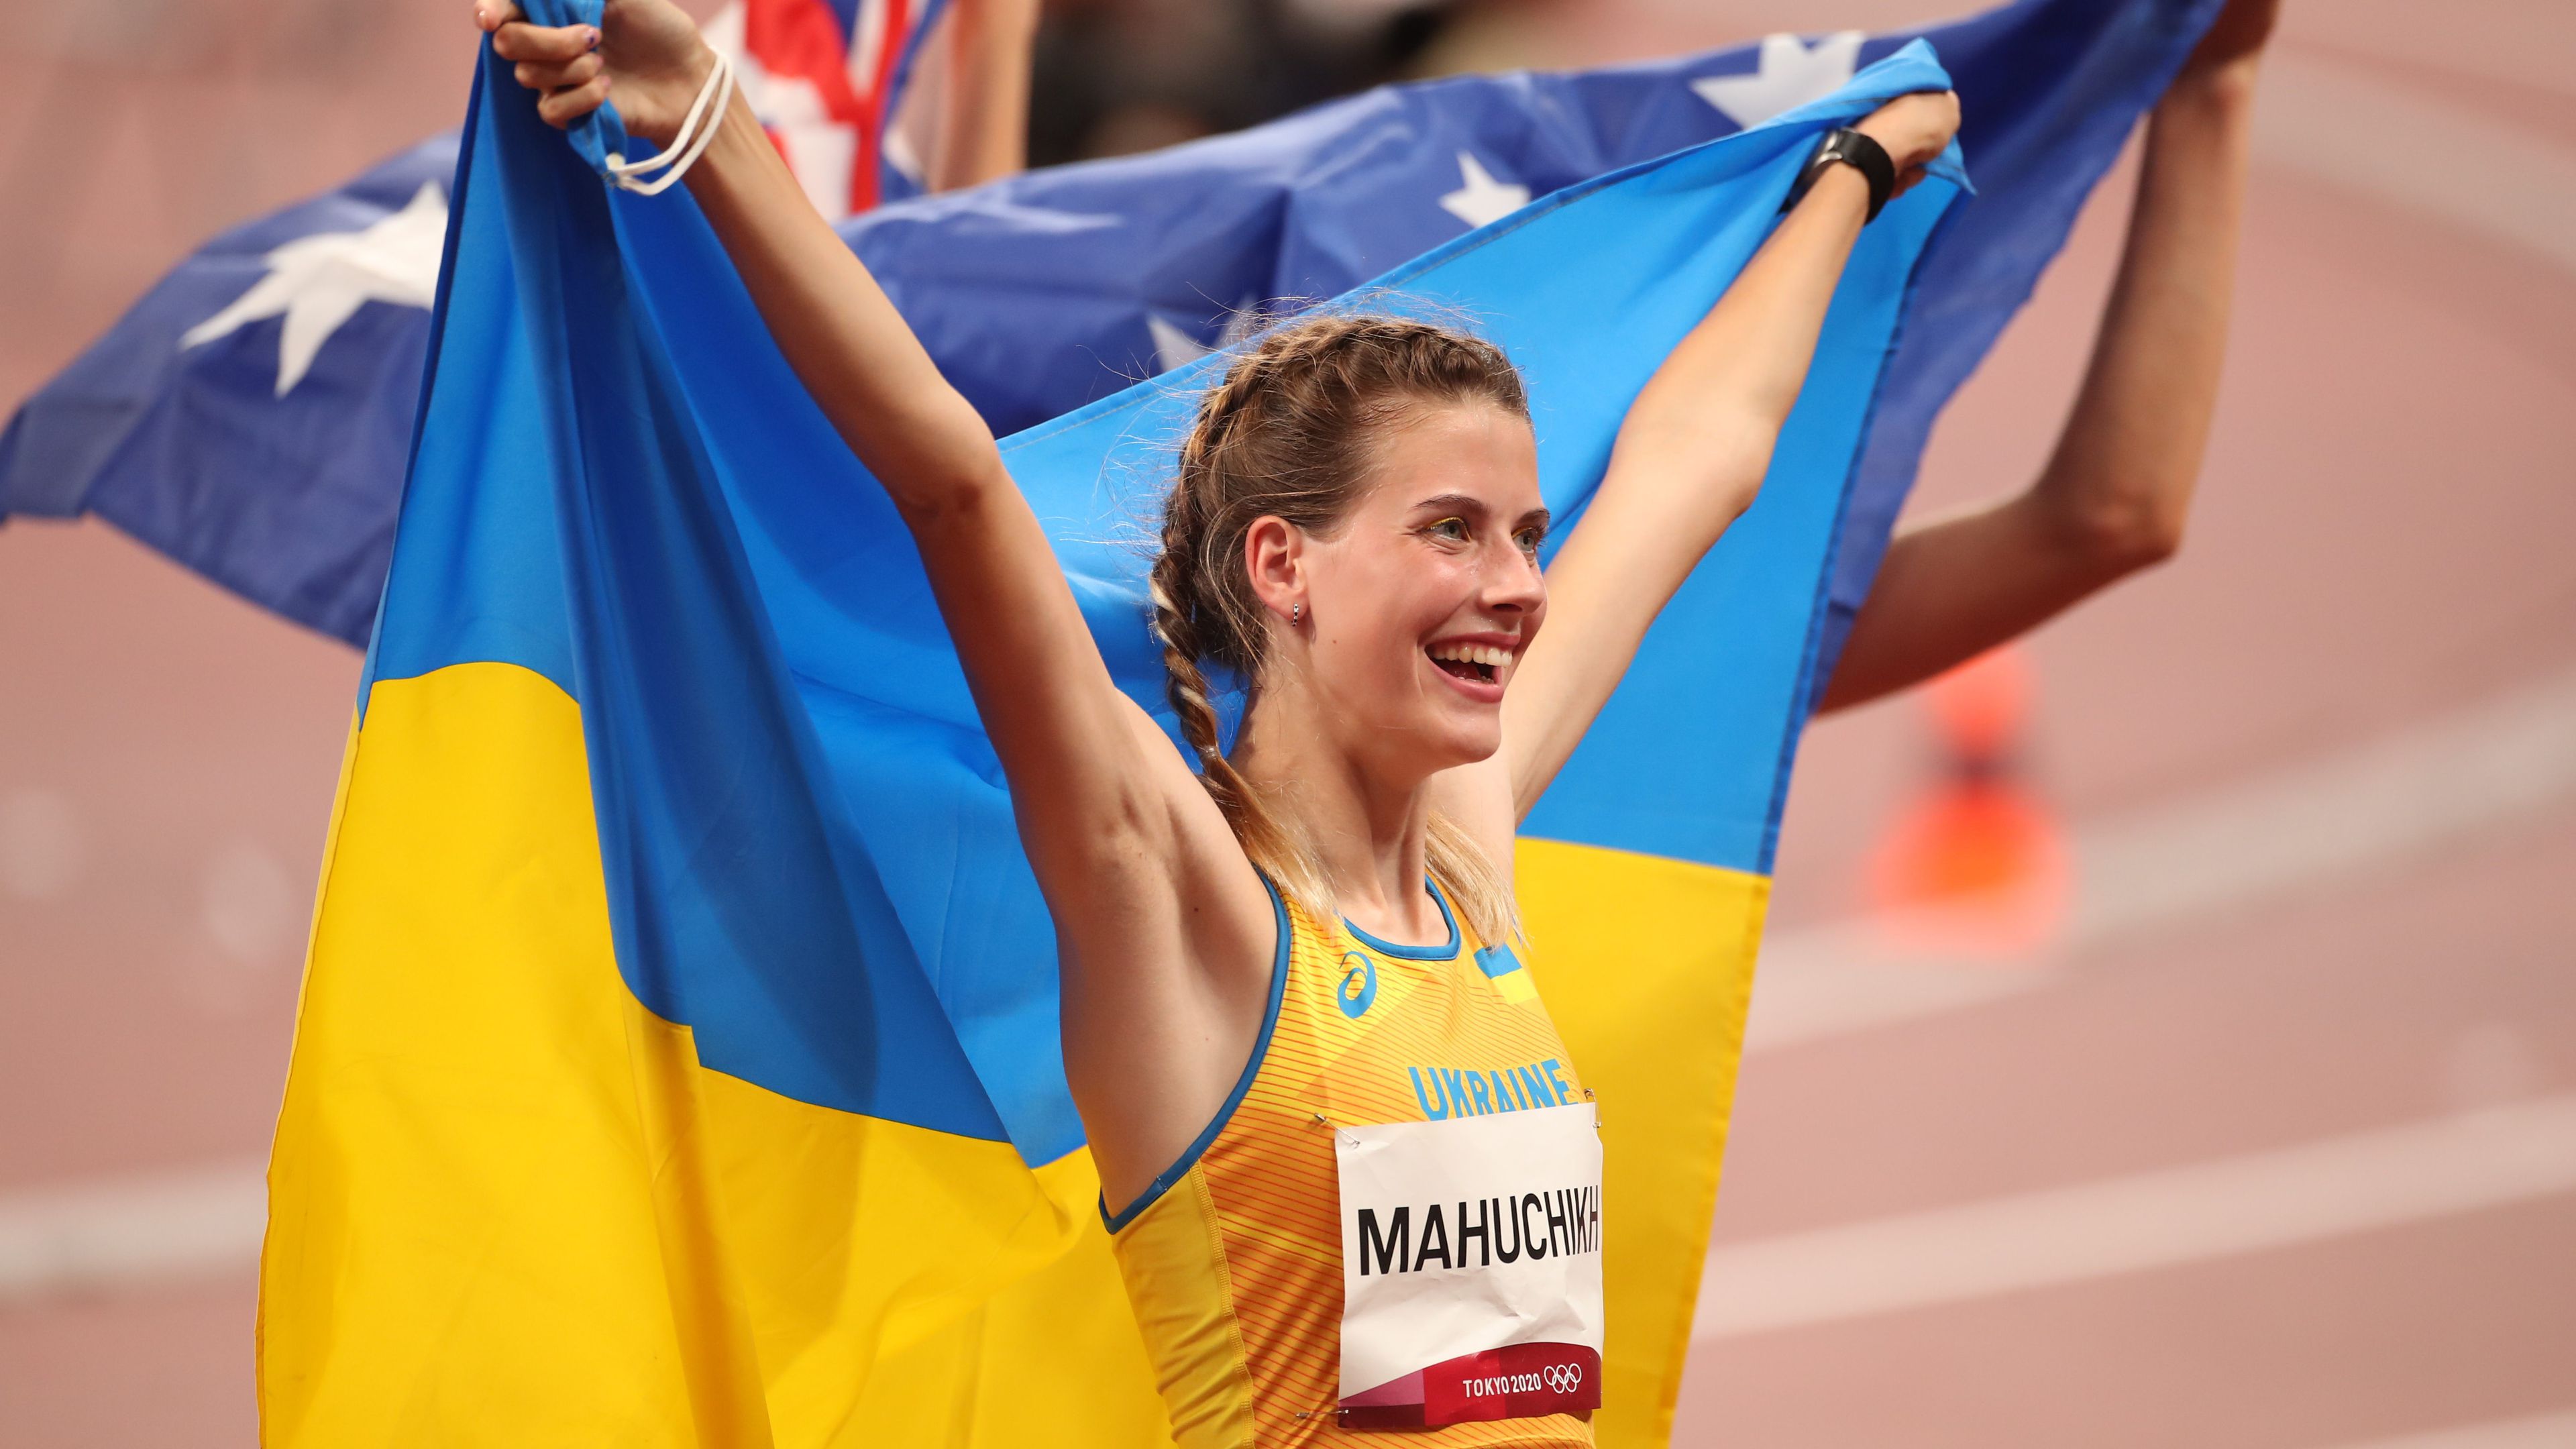 Bojkottálhatják az olimpiát az ukránok